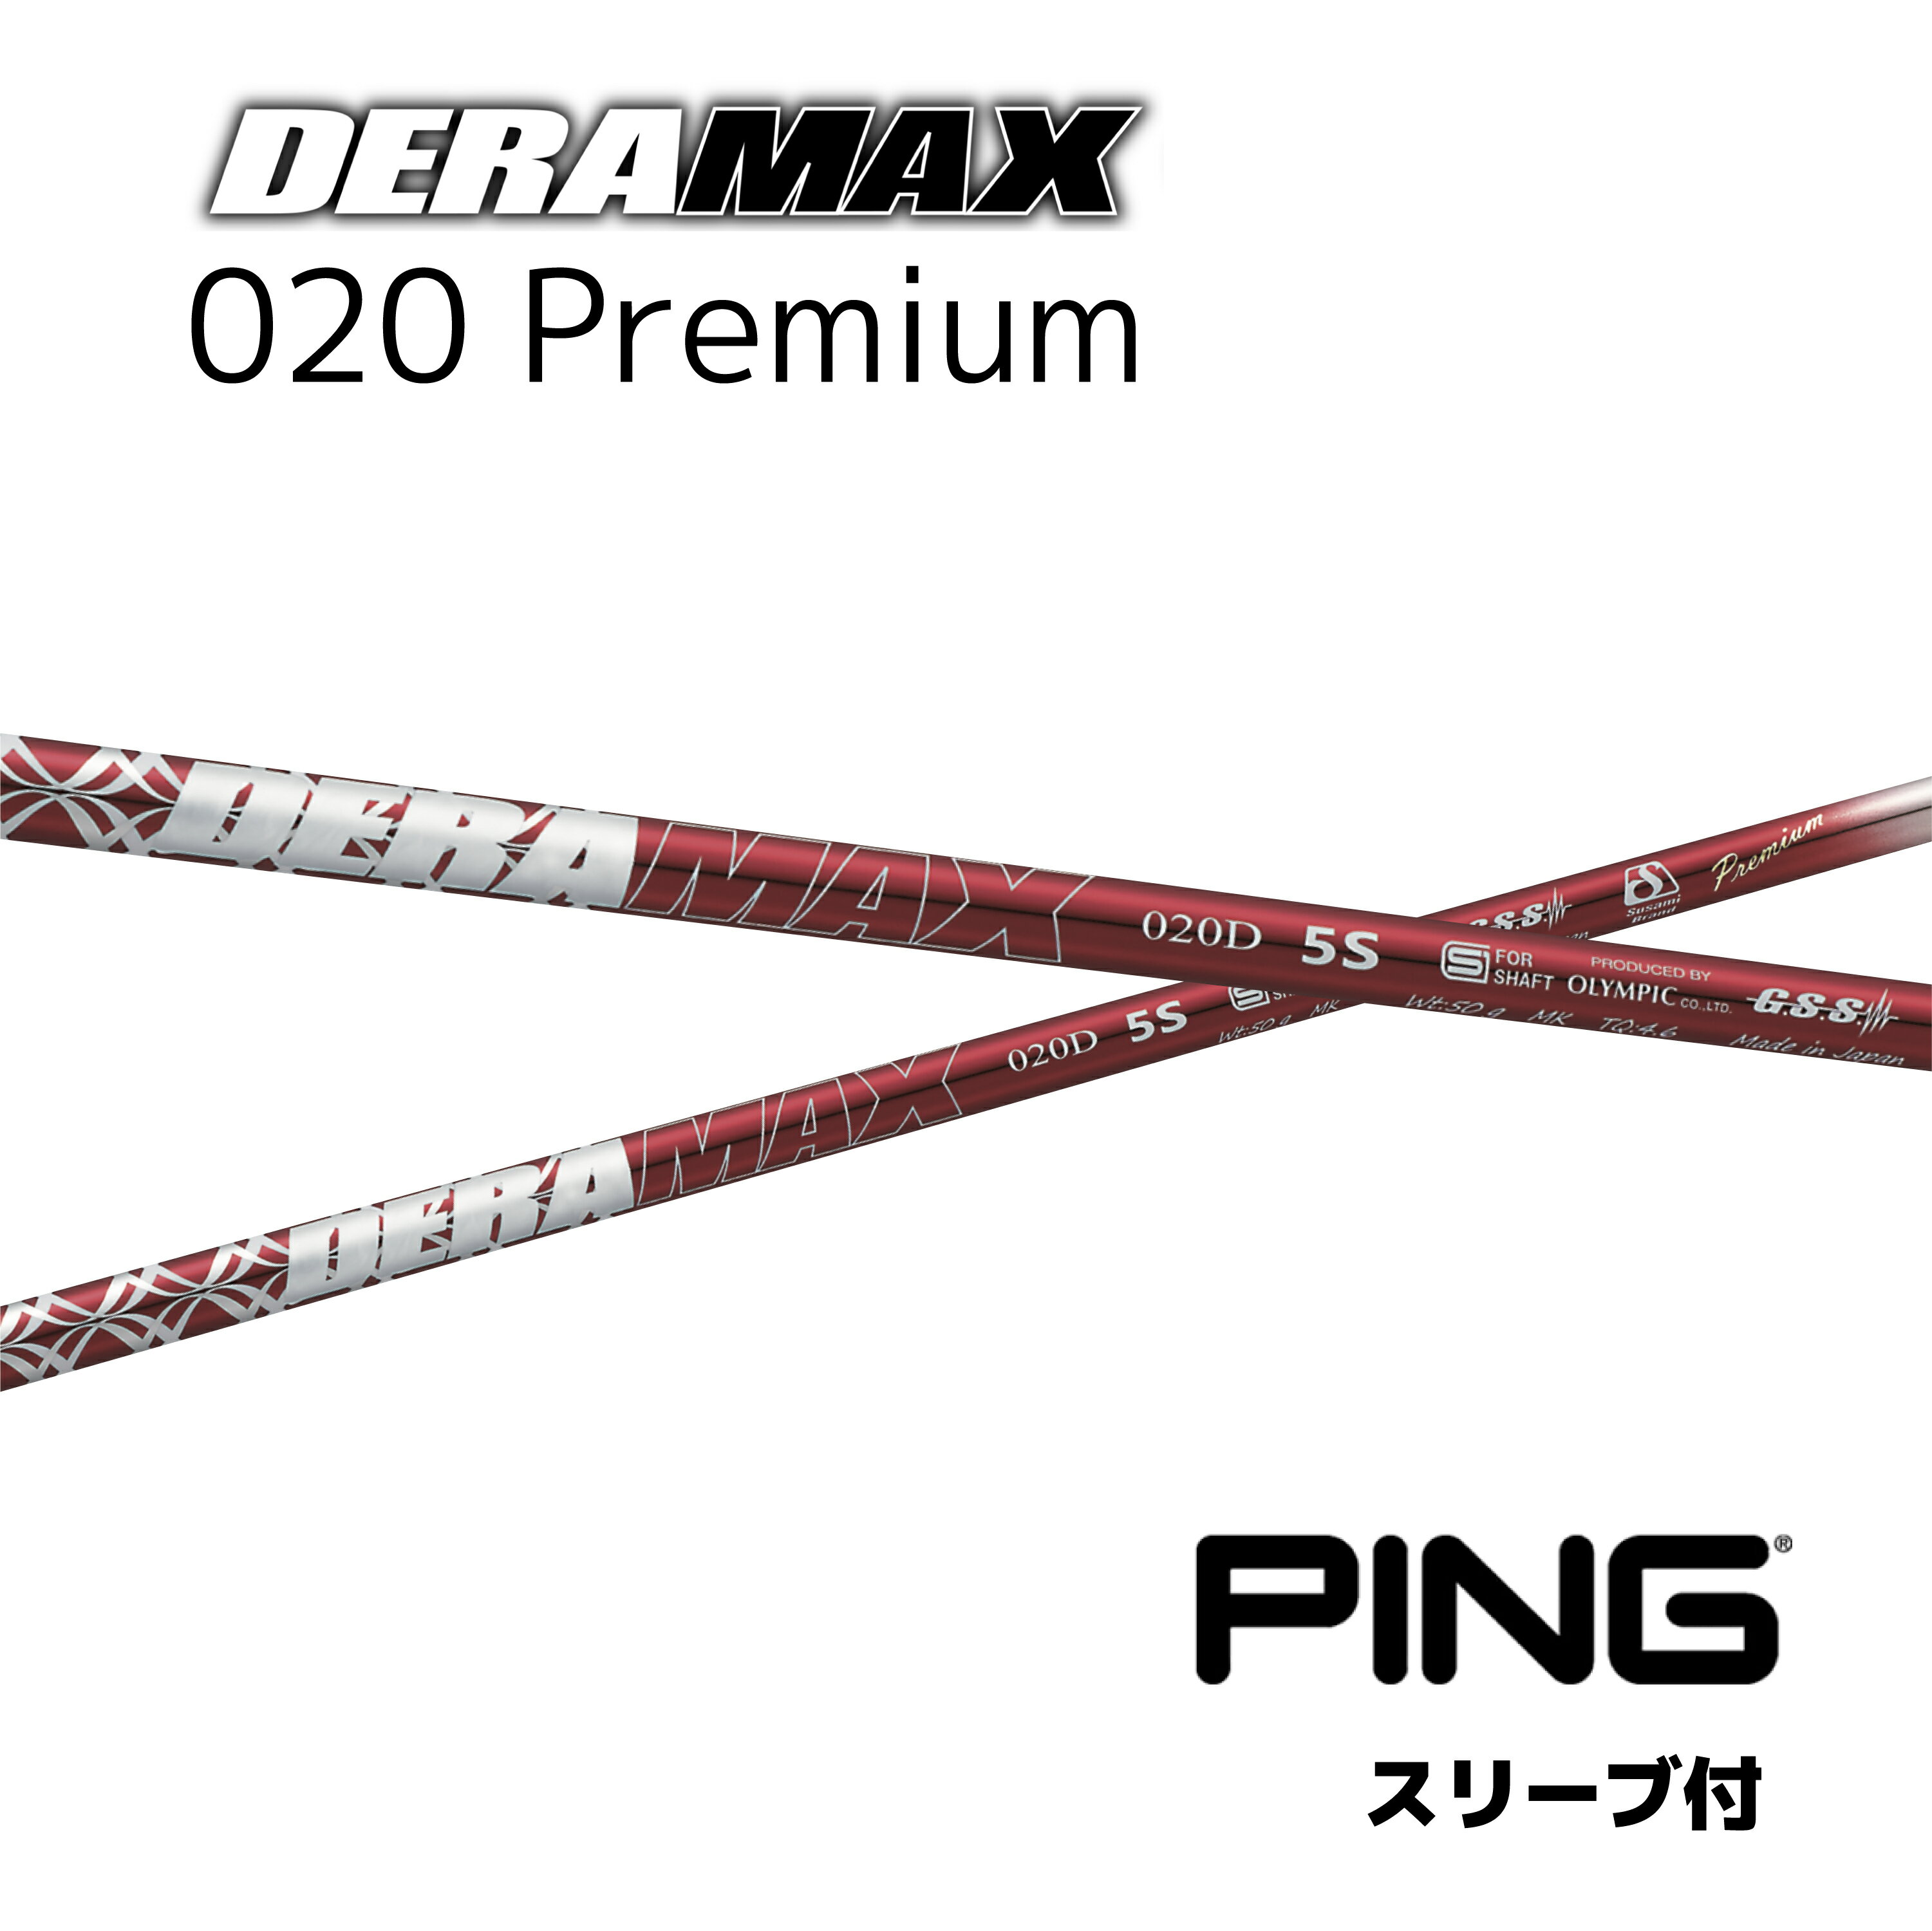 オリムピック デラマックス 020プレミアム PING用　G425 G410 対応スリーブ付シャフト ドライバー用 DERA MAX 020 Premium Series